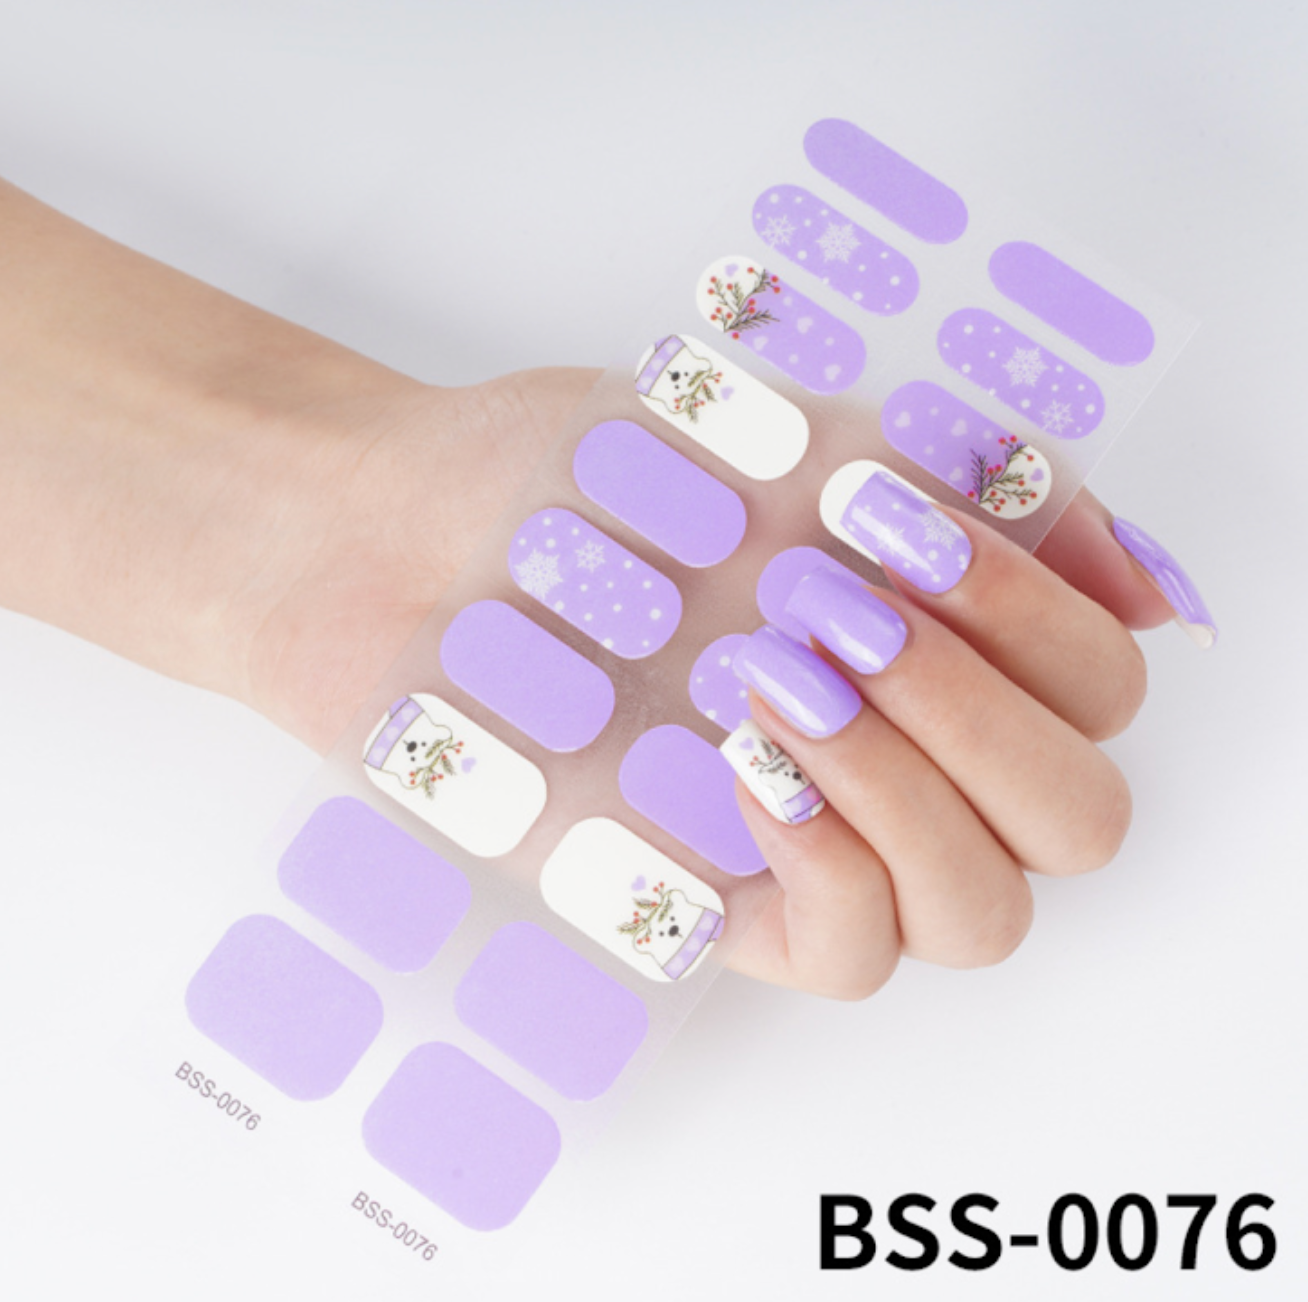 20 PCS Semi-Cured Gel Nail Wraps | BSS 0076